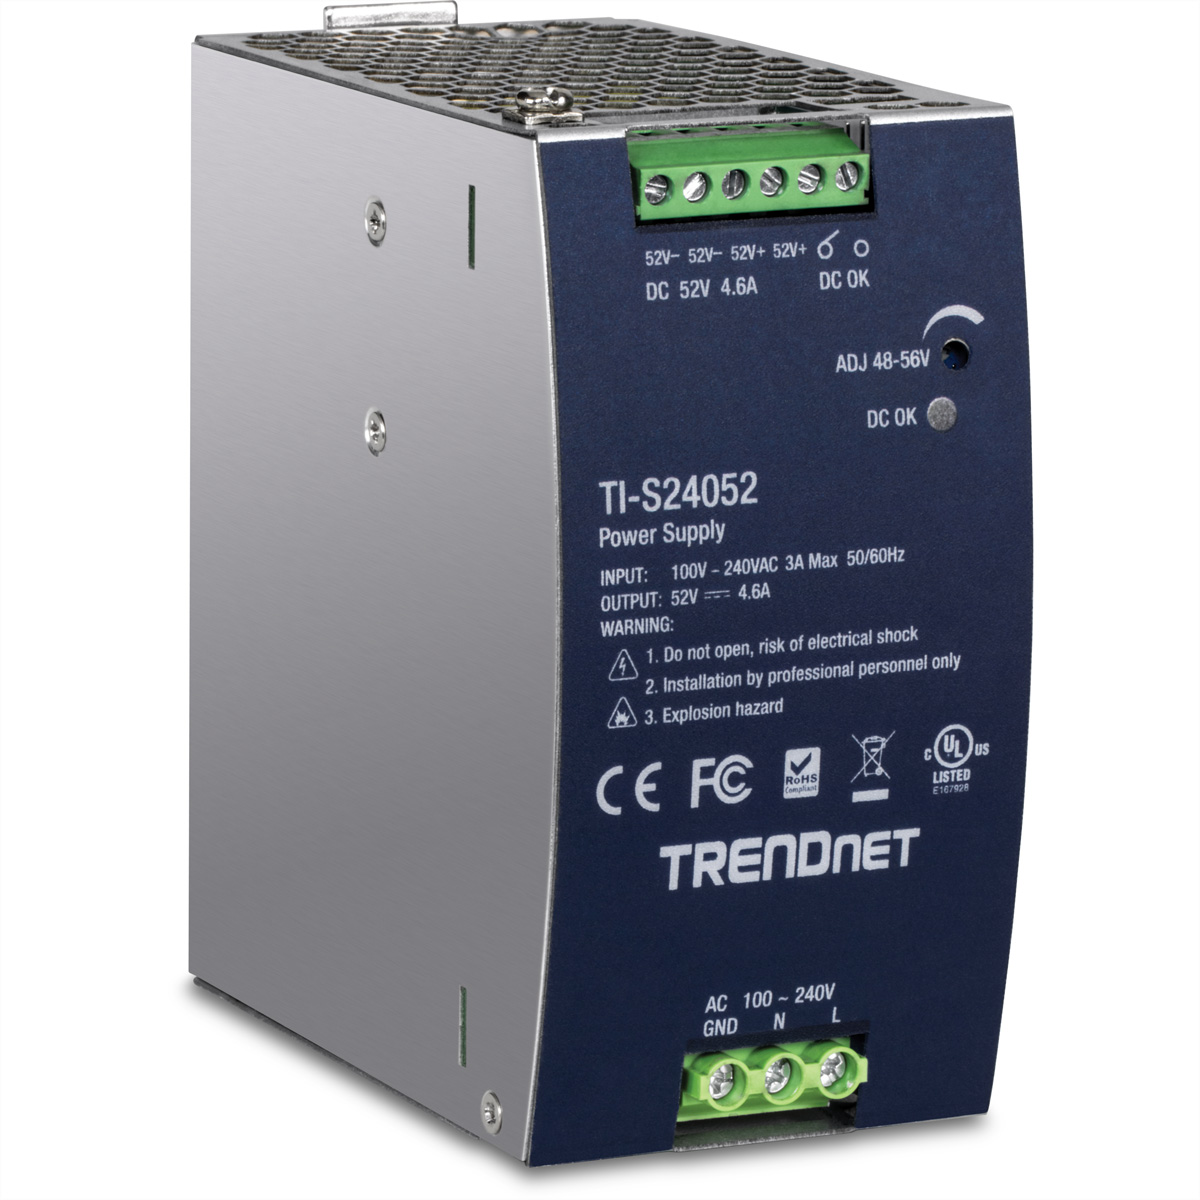 TRENDNET TI-S24052 DIN-Rail Power Supply Netzteil